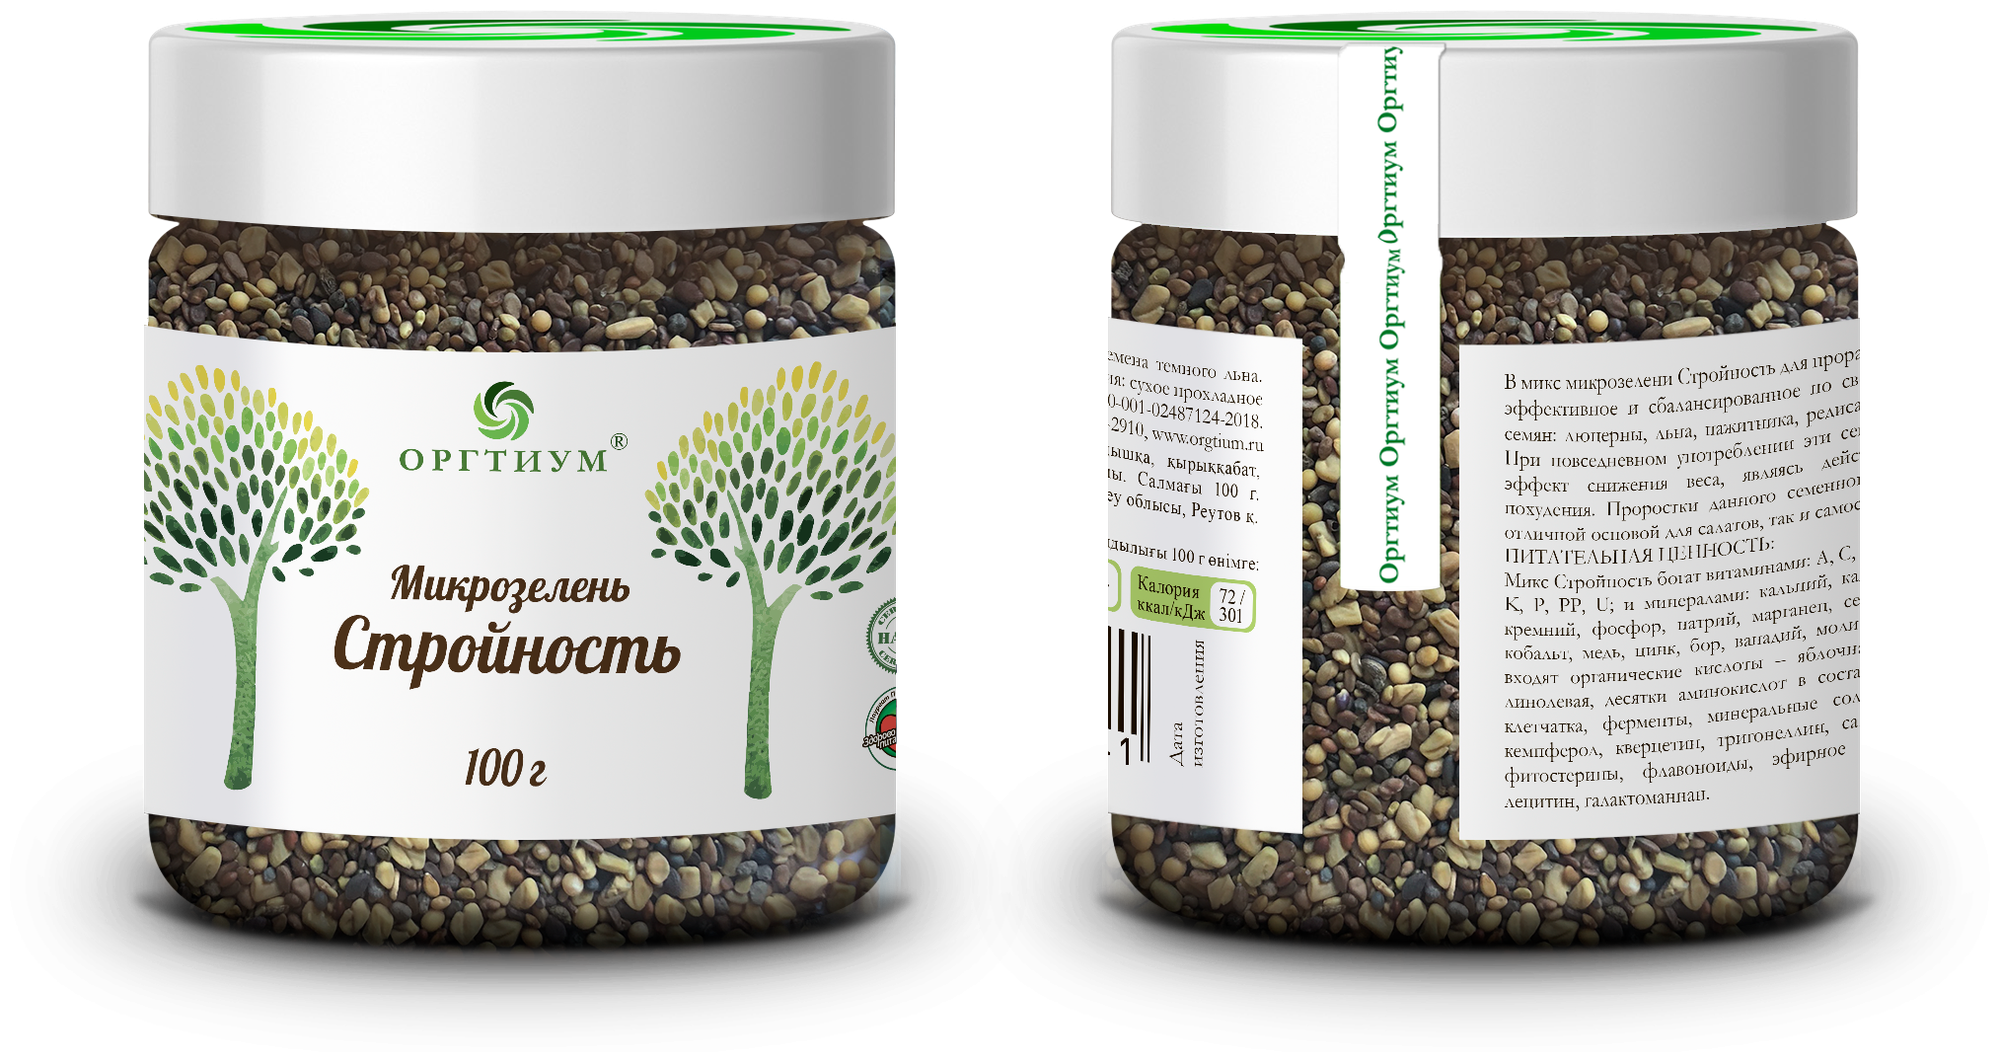 Микрозелень Стройность (люцерна, капуста, пажитник, редис, семена тёмного льна) Оргтиум 100 гр.